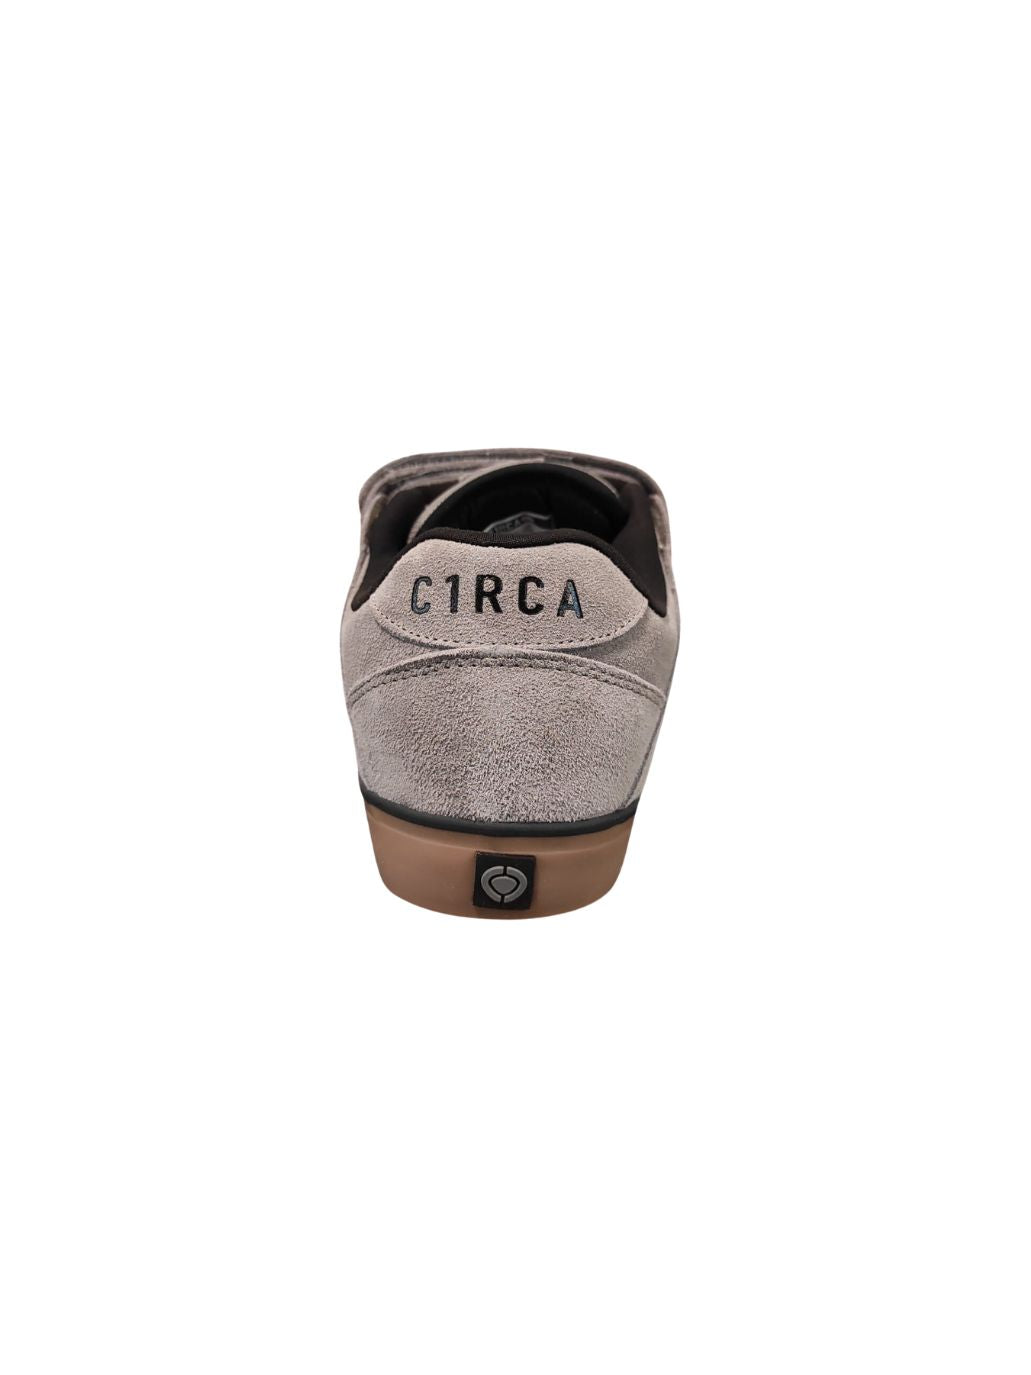 Zapatillas de skate Circa 205 Vulc Steeple Grey/Black/Gum/Suede | Calzado | Zapatillas | surfdevils.com